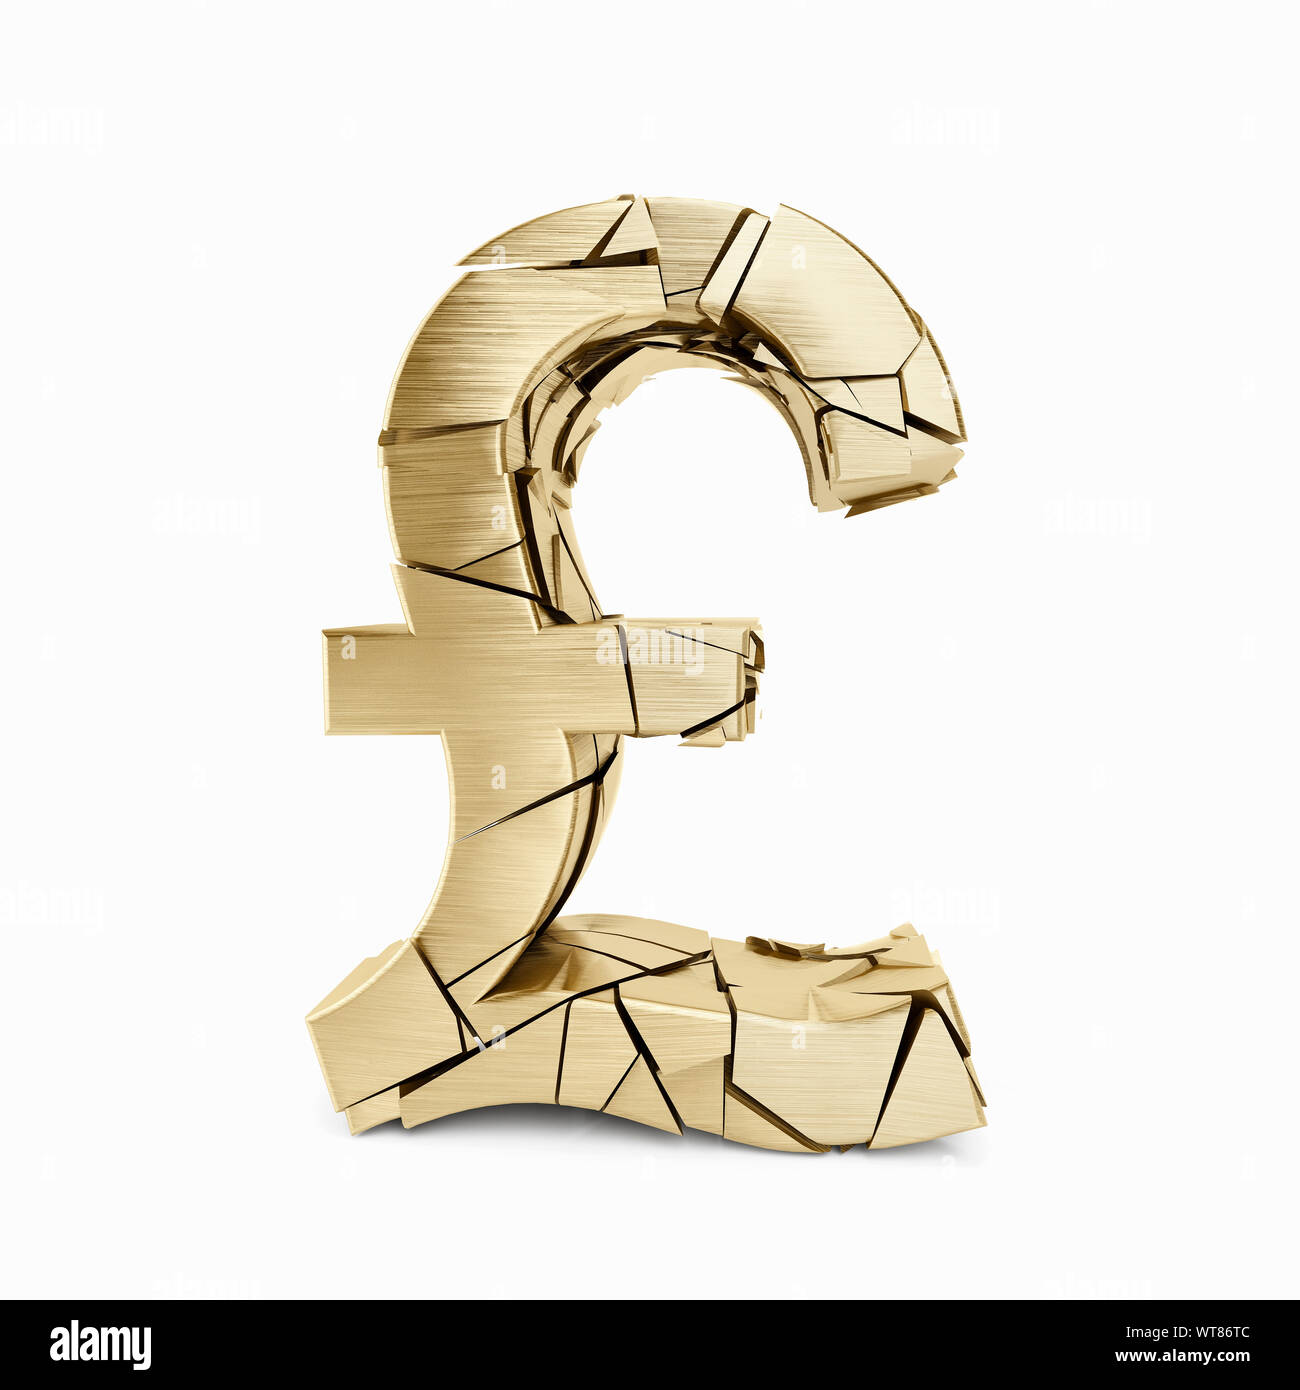 Agrietado y desmoronamiento de oro símbolo de moneda libra esterlina, GBP Foto de stock